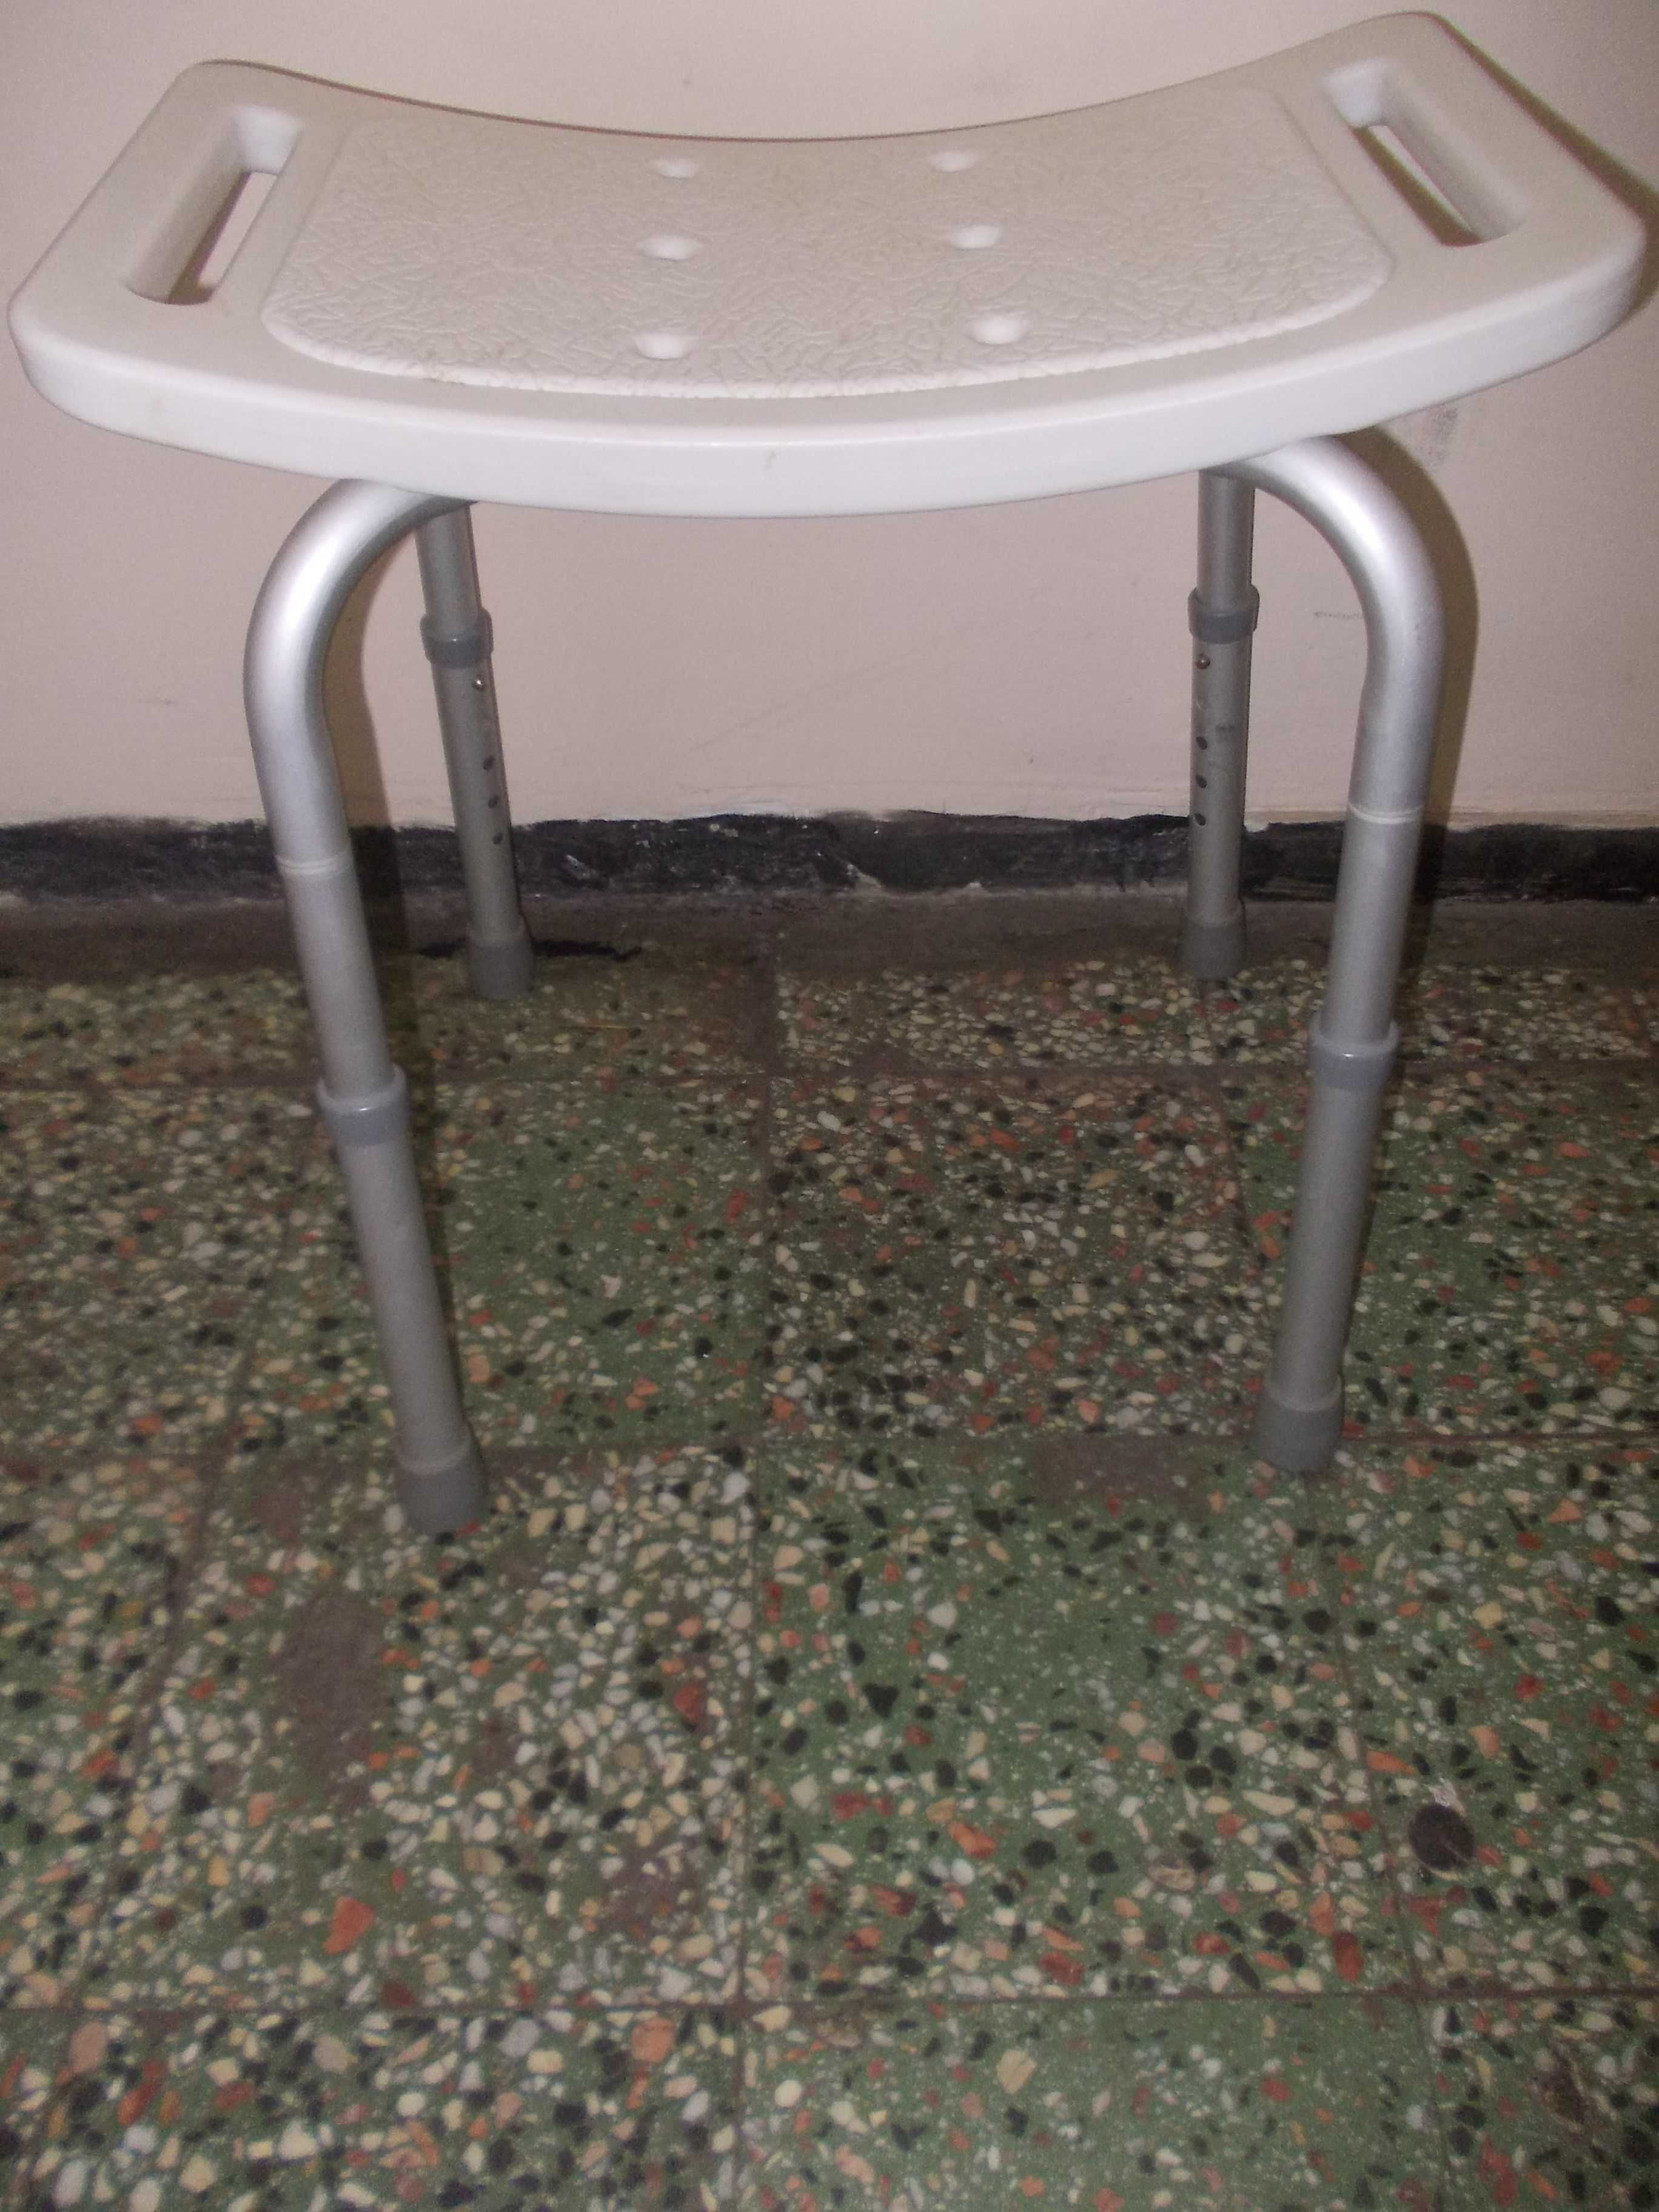 Scaun baie duș cada batran dizabilitati handicap,din aluminiu reglabil